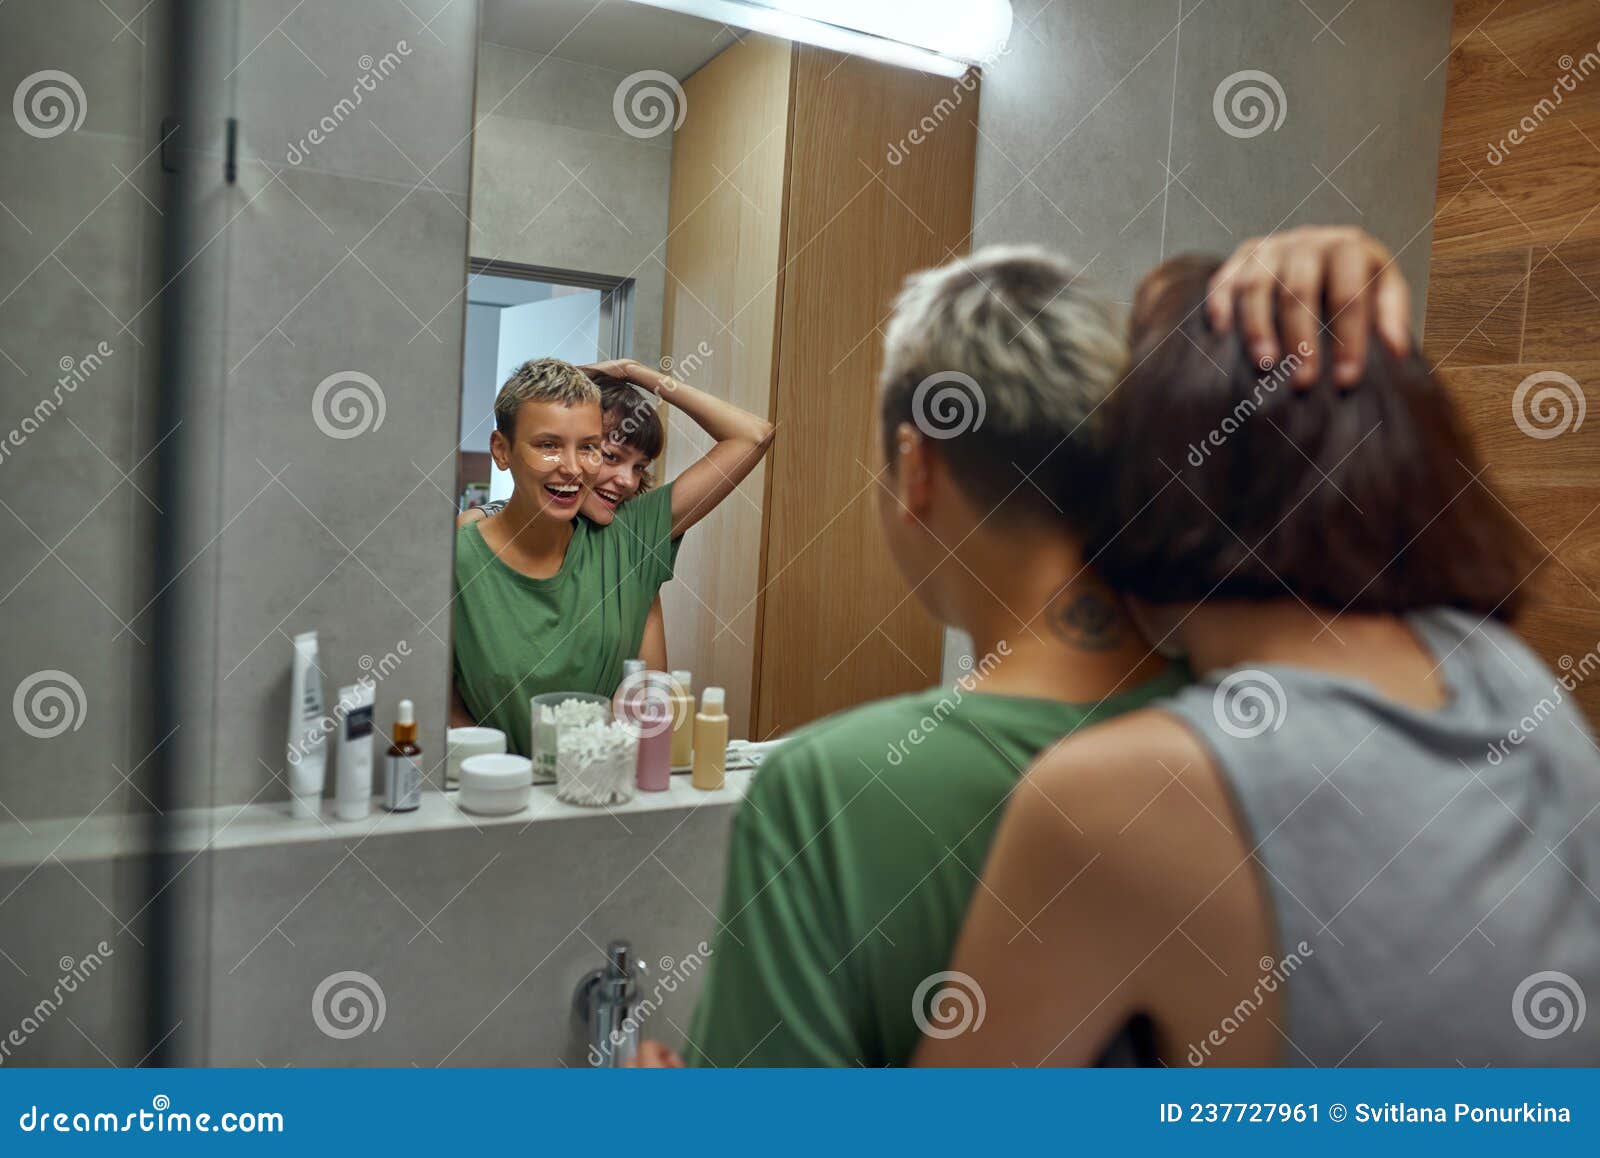 Lesbian In Bathroom